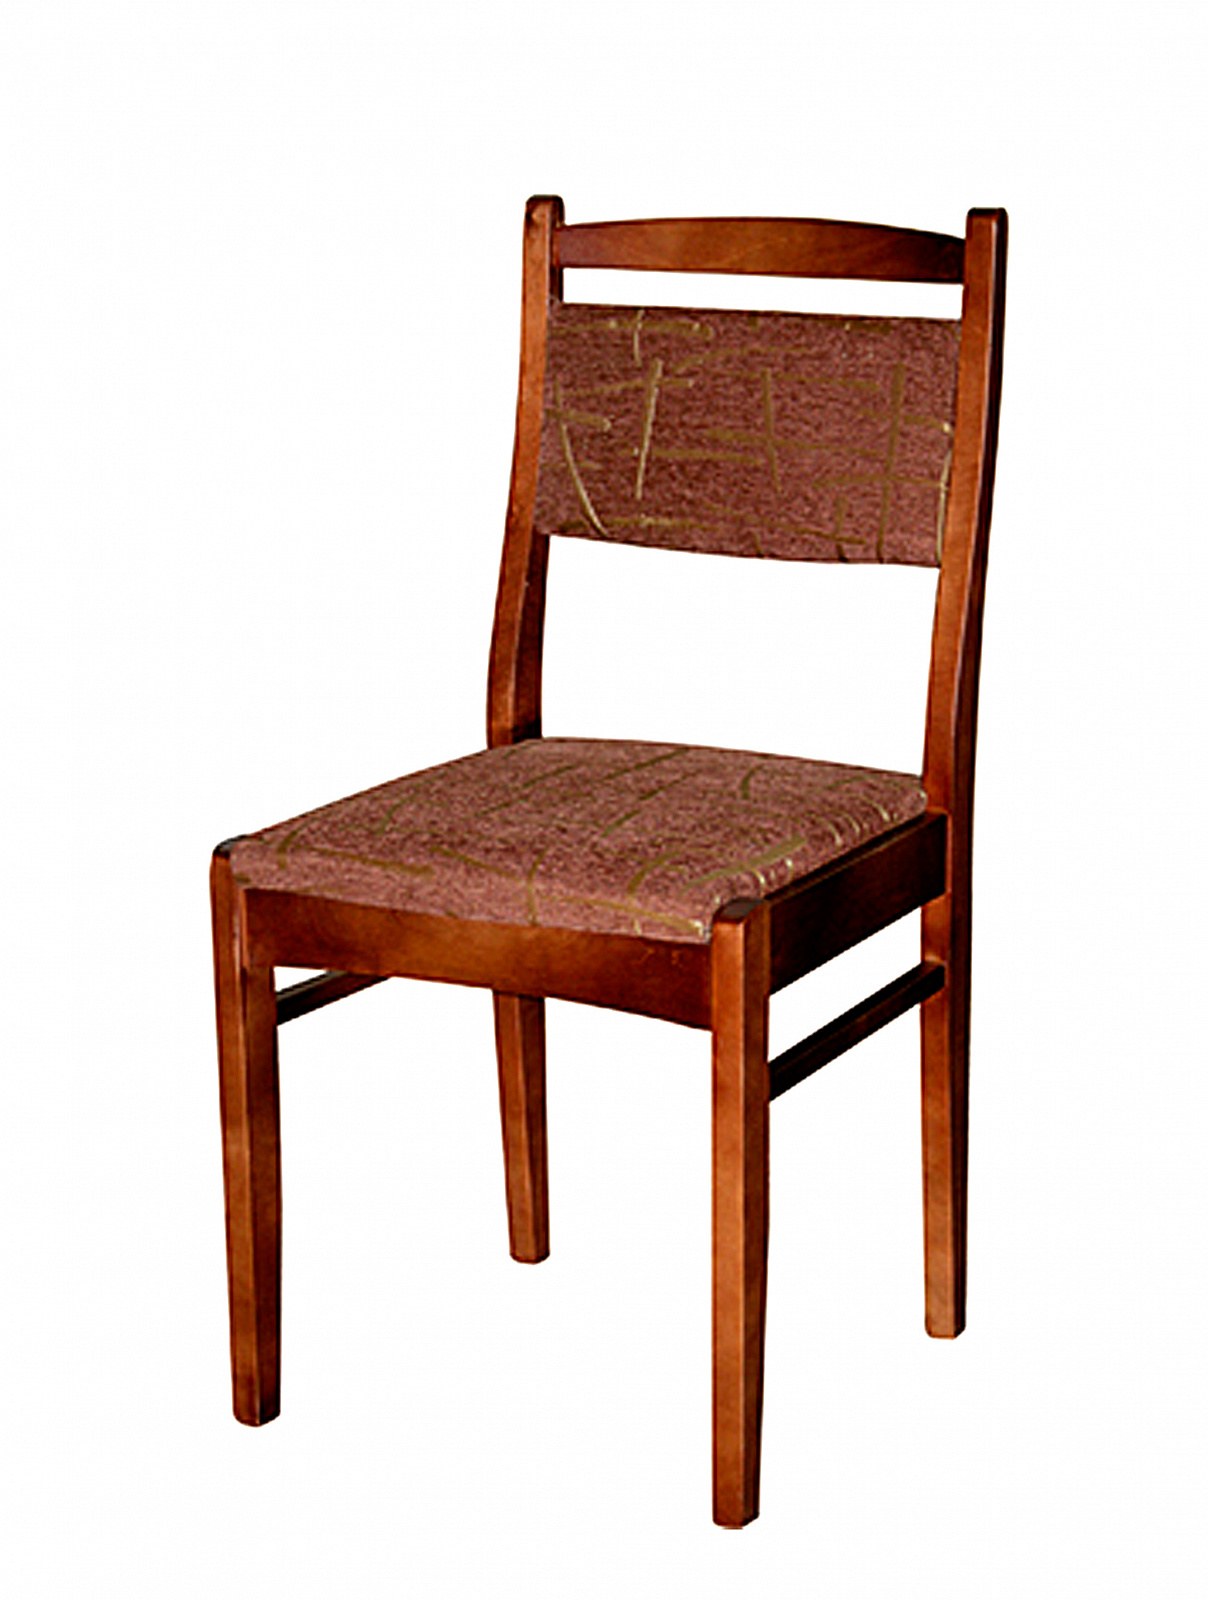 Недорогие стулья с мягким сиденьем. Стул деревянный ДС-8326. Стул деревянный дс8323. Стул столярный Дито 421-СС-01. Стулдеревяный со спинкой.